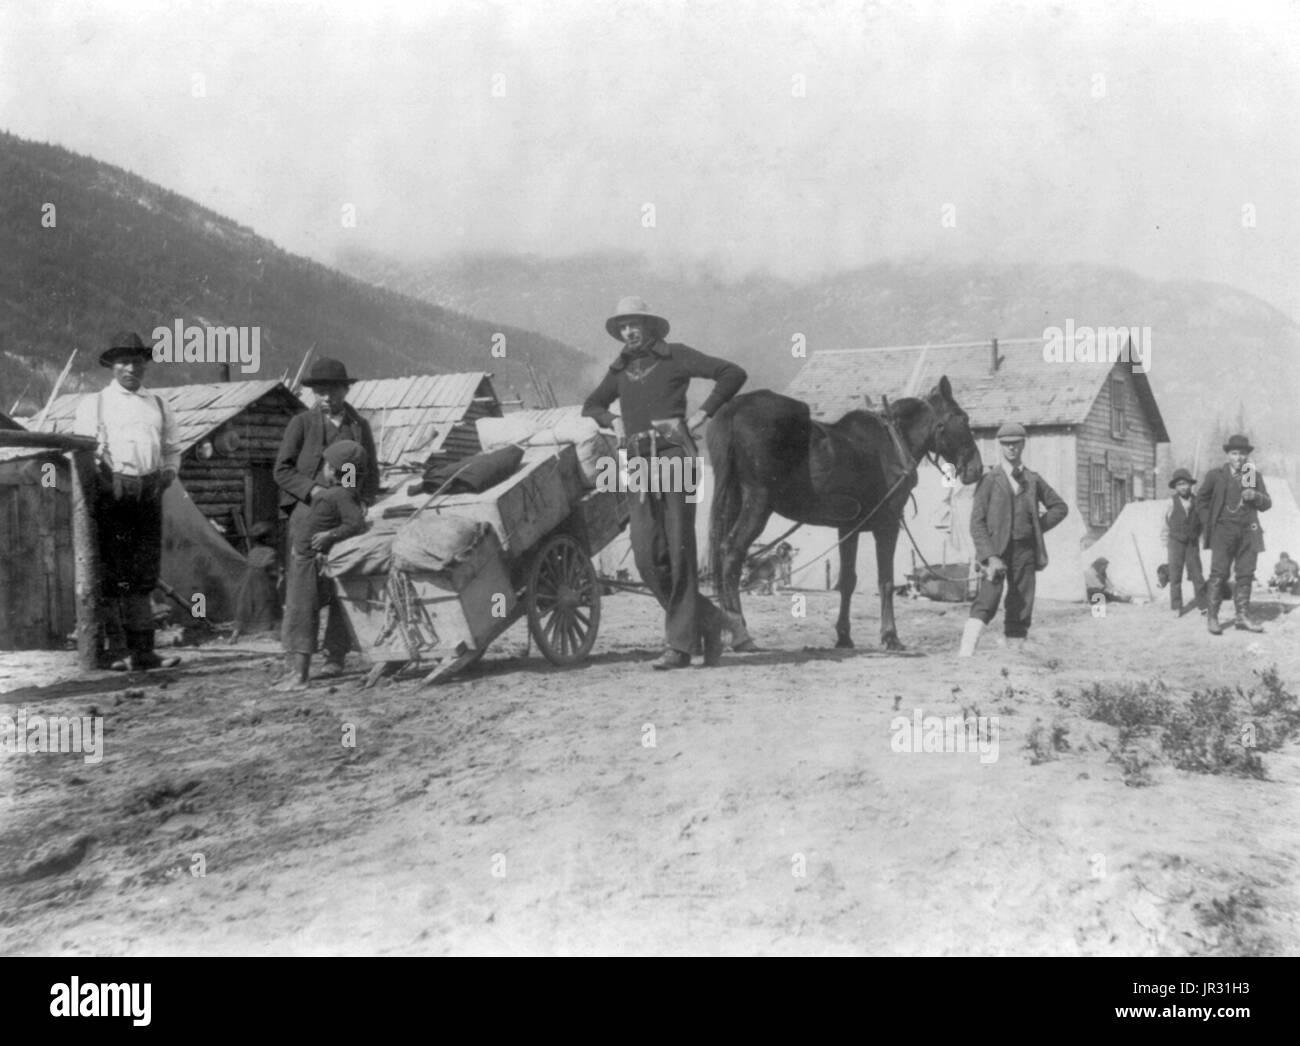 Klondike vagón cargado con provisiones. El Klondike Gold Rush era una migración por un estimado de 100.000 prospectores a Klondike región del Yukon entre 1896-99. Se descubrió oro por mineros locales el 16 de agosto de 1896 y, cuando llegaron noticias de Seattle y San Francisco, desencadenó una estampida de los prospectores. Para llegar a los campos de oro más tomó la ruta a través de los puertos de Dyea y Skagway, en Alaska. Aquí, los Klondikers podría seguir el Chilkoot Pass blanco o los senderos del río Yukón y navegar hasta el Klondike. Cada uno de ellos era necesario para traer el suministro de un año de fo Foto de stock